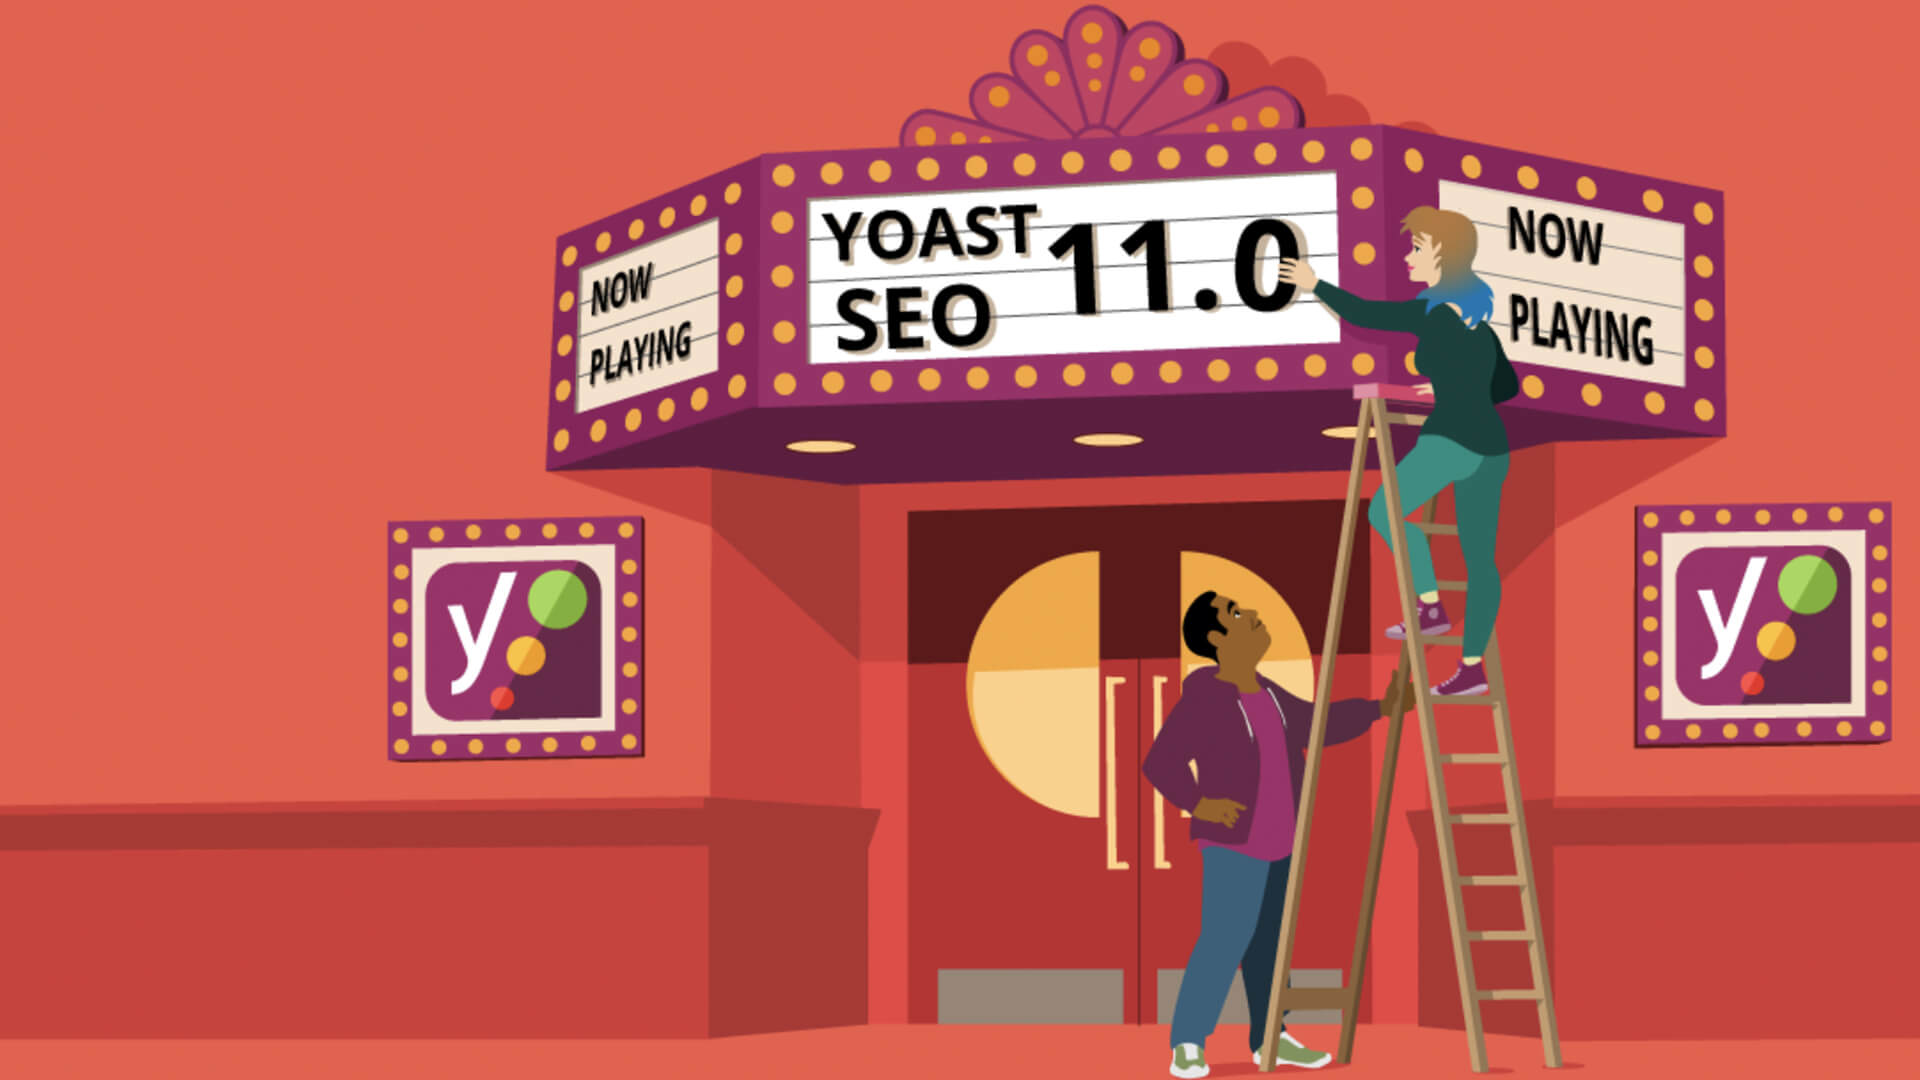 Yoast ofrece un marcado Schema renovado con la actualización 11.0